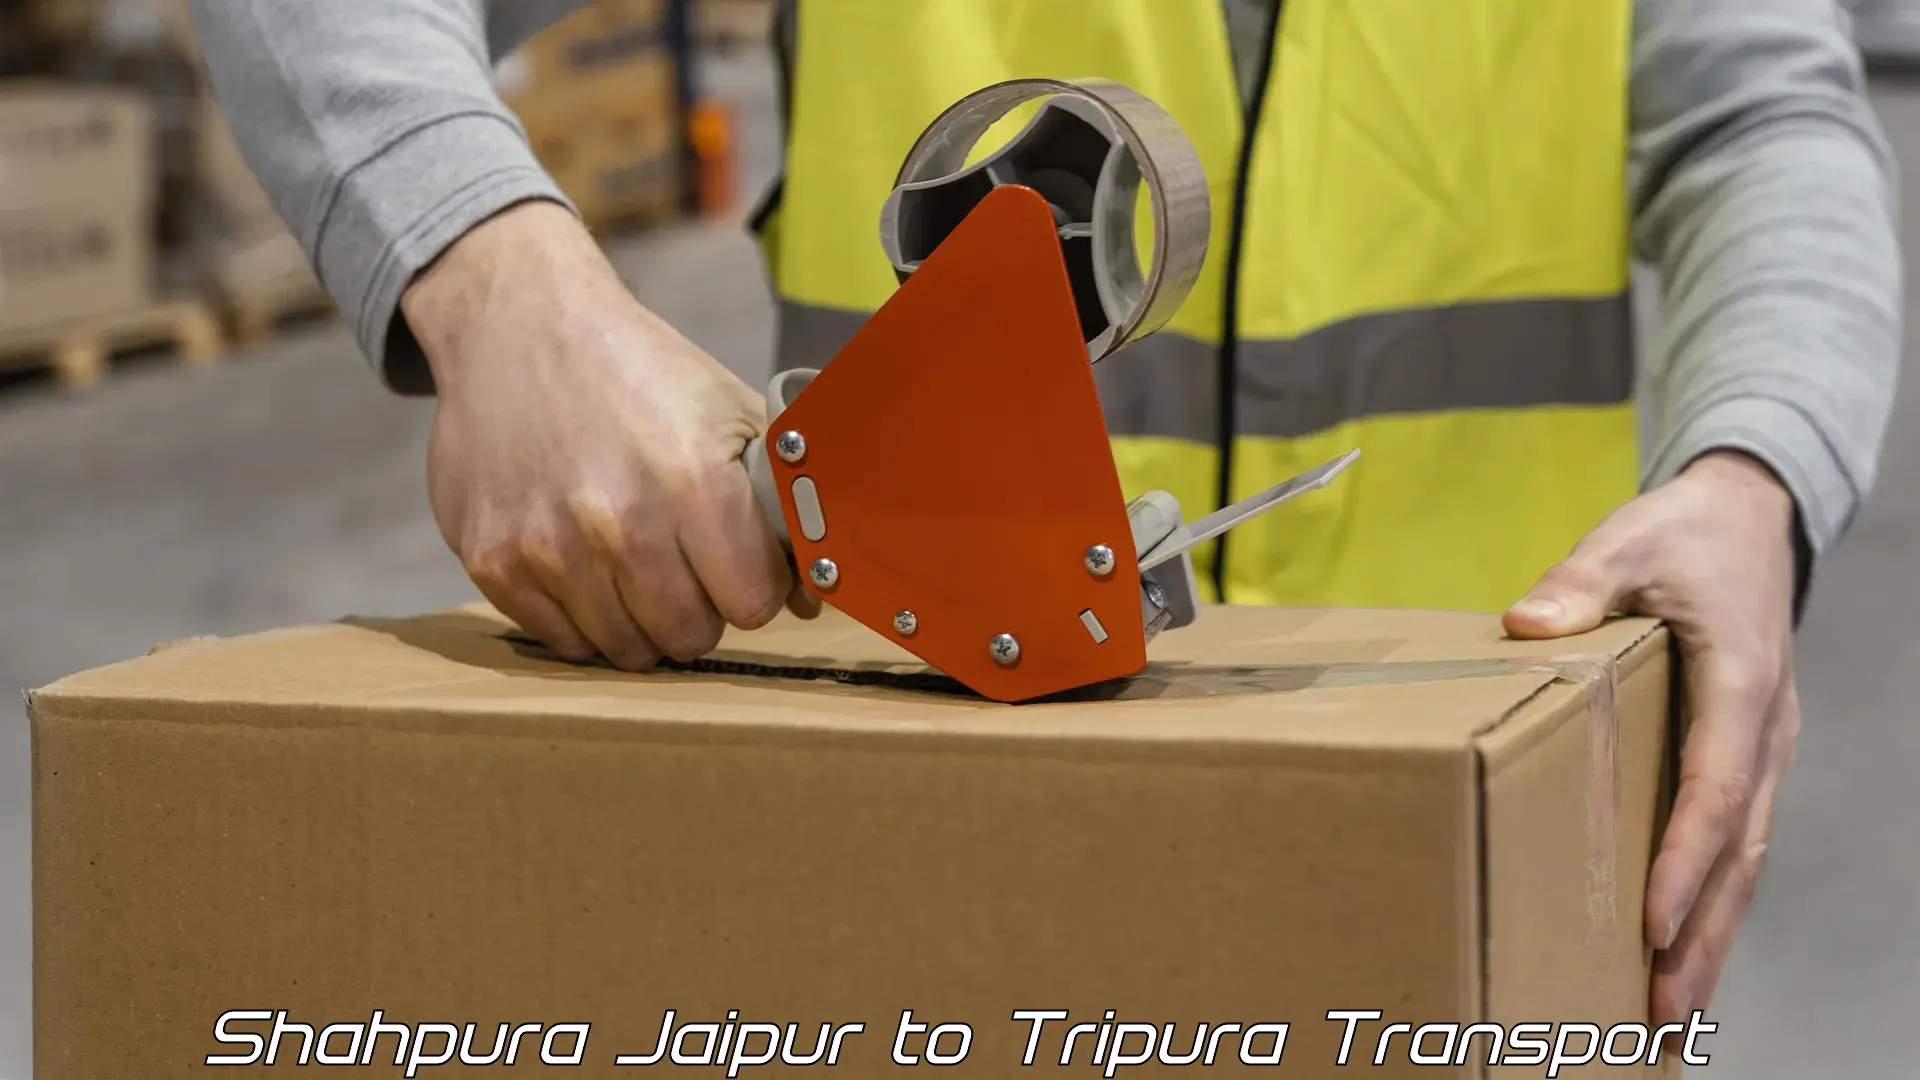 Transportation solution services Shahpura Jaipur to Udaipur Tripura